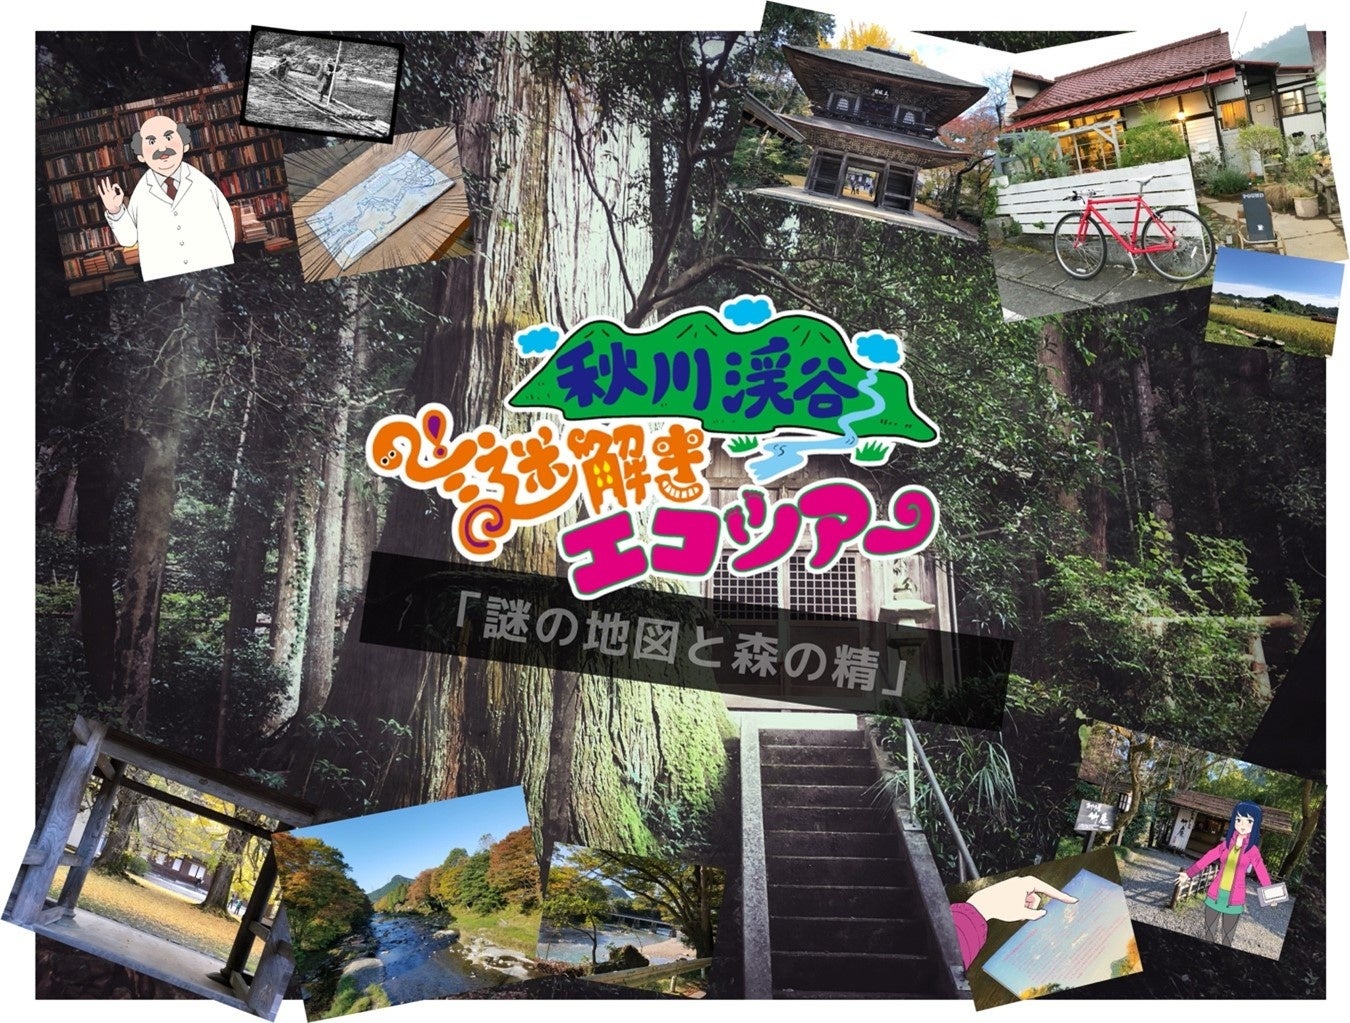 【東京・春の新体験】BBQワイン会や日本酒交流会、自転車で巡るエコツアーも！ 東京の山間地域で新体験やイベントが続々誕生のサブ画像1